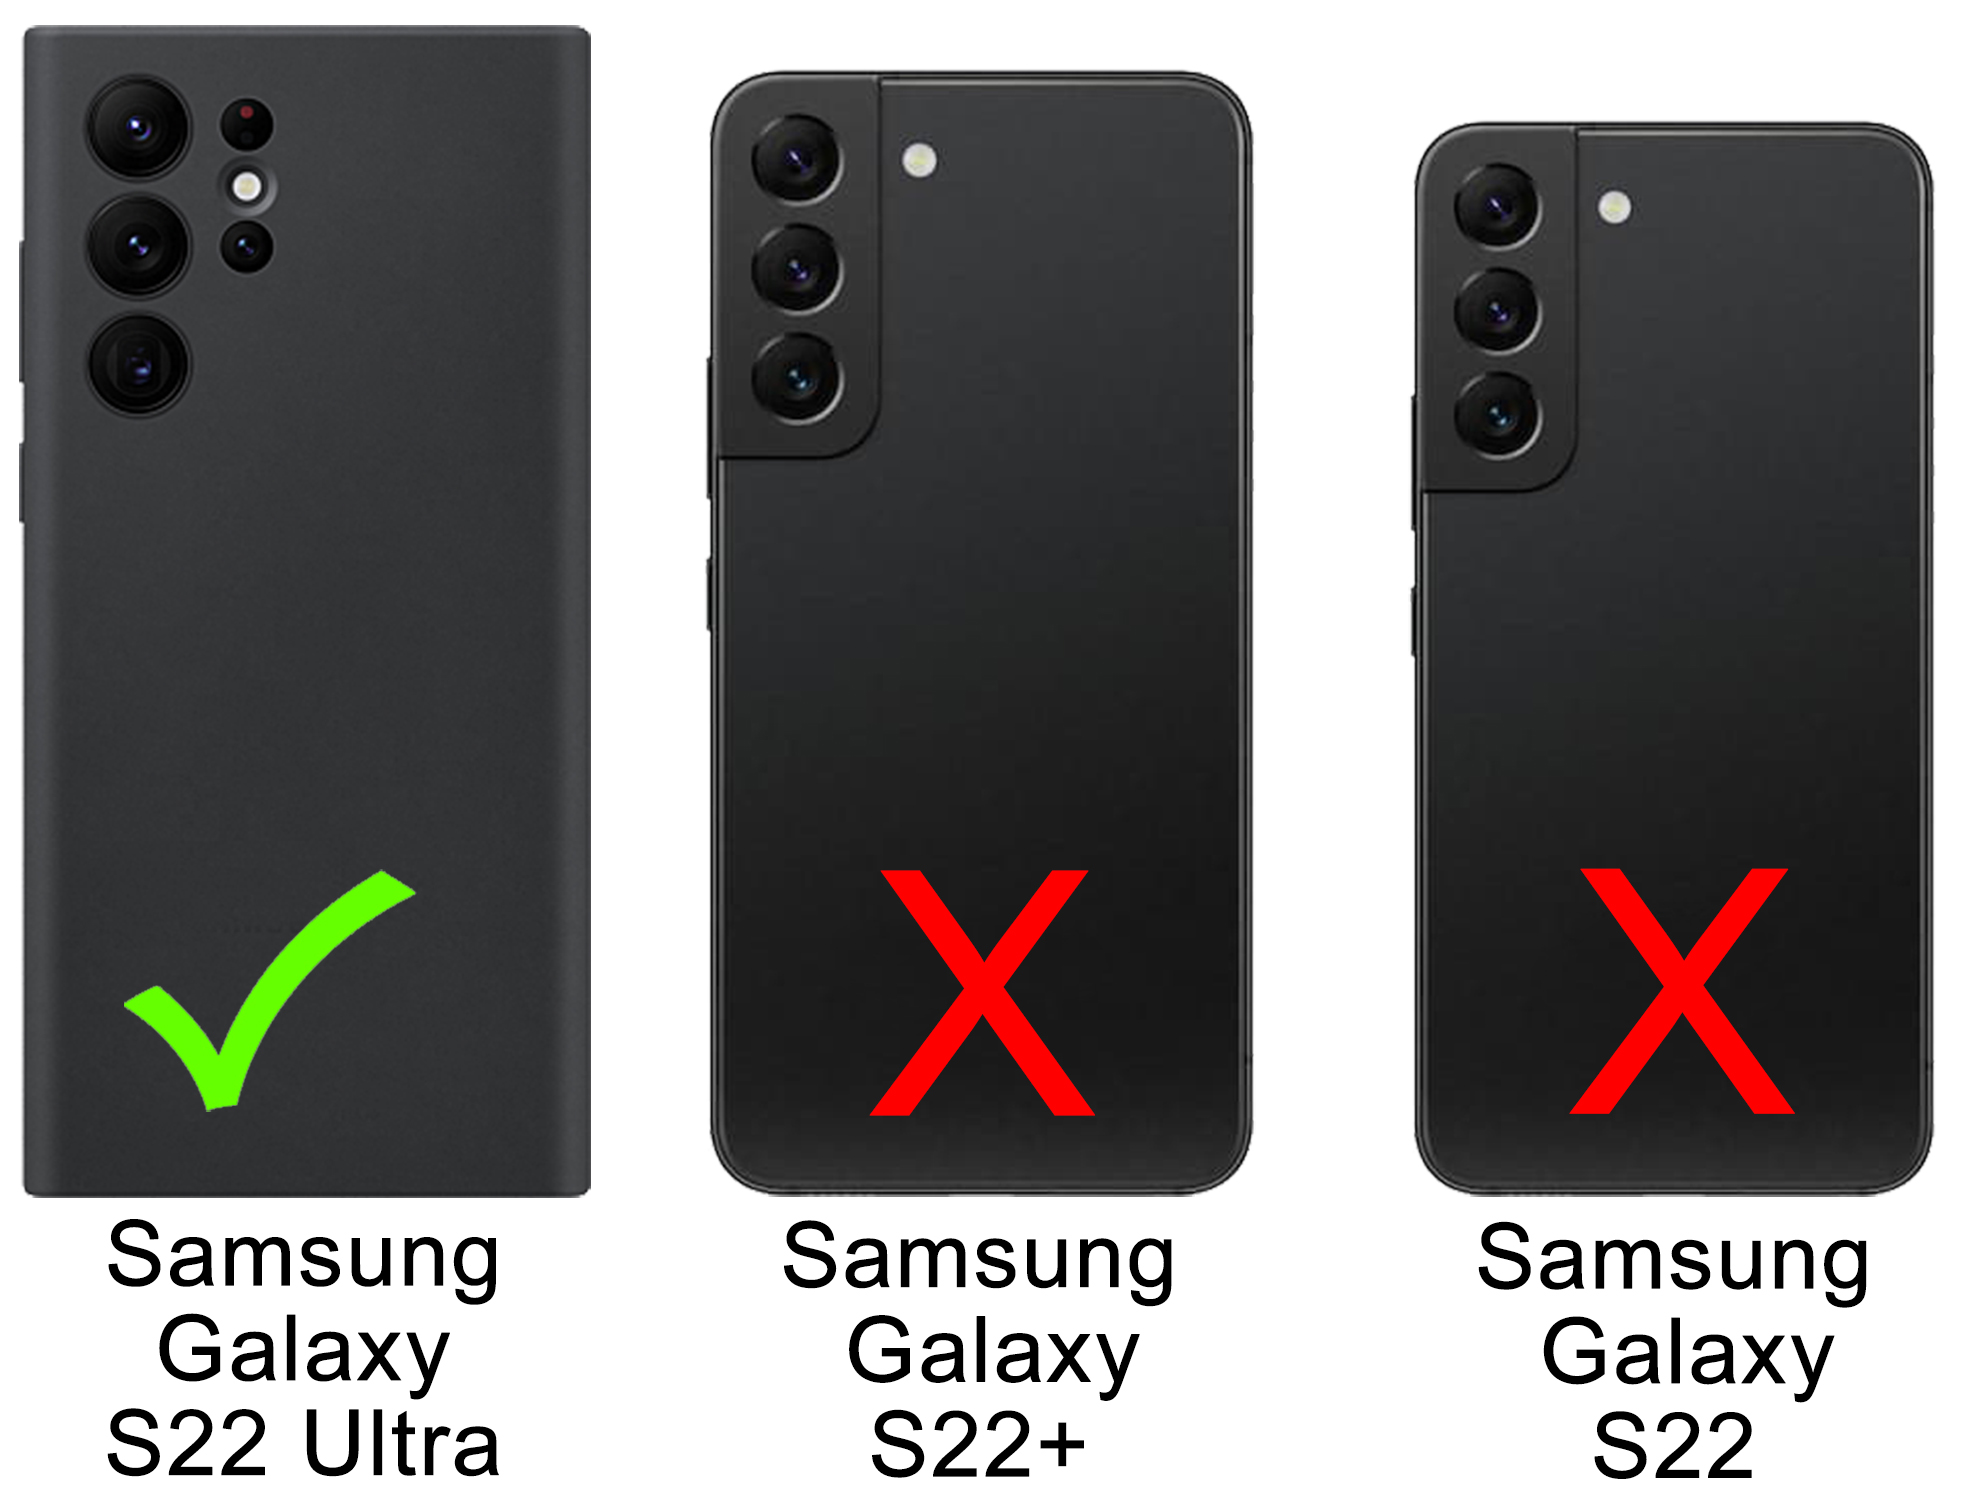 BURKLEY Flip-Case Handytasche aus Sattelbraun Cover, Flip Leder, Galaxy S22 Ultra, Samsung